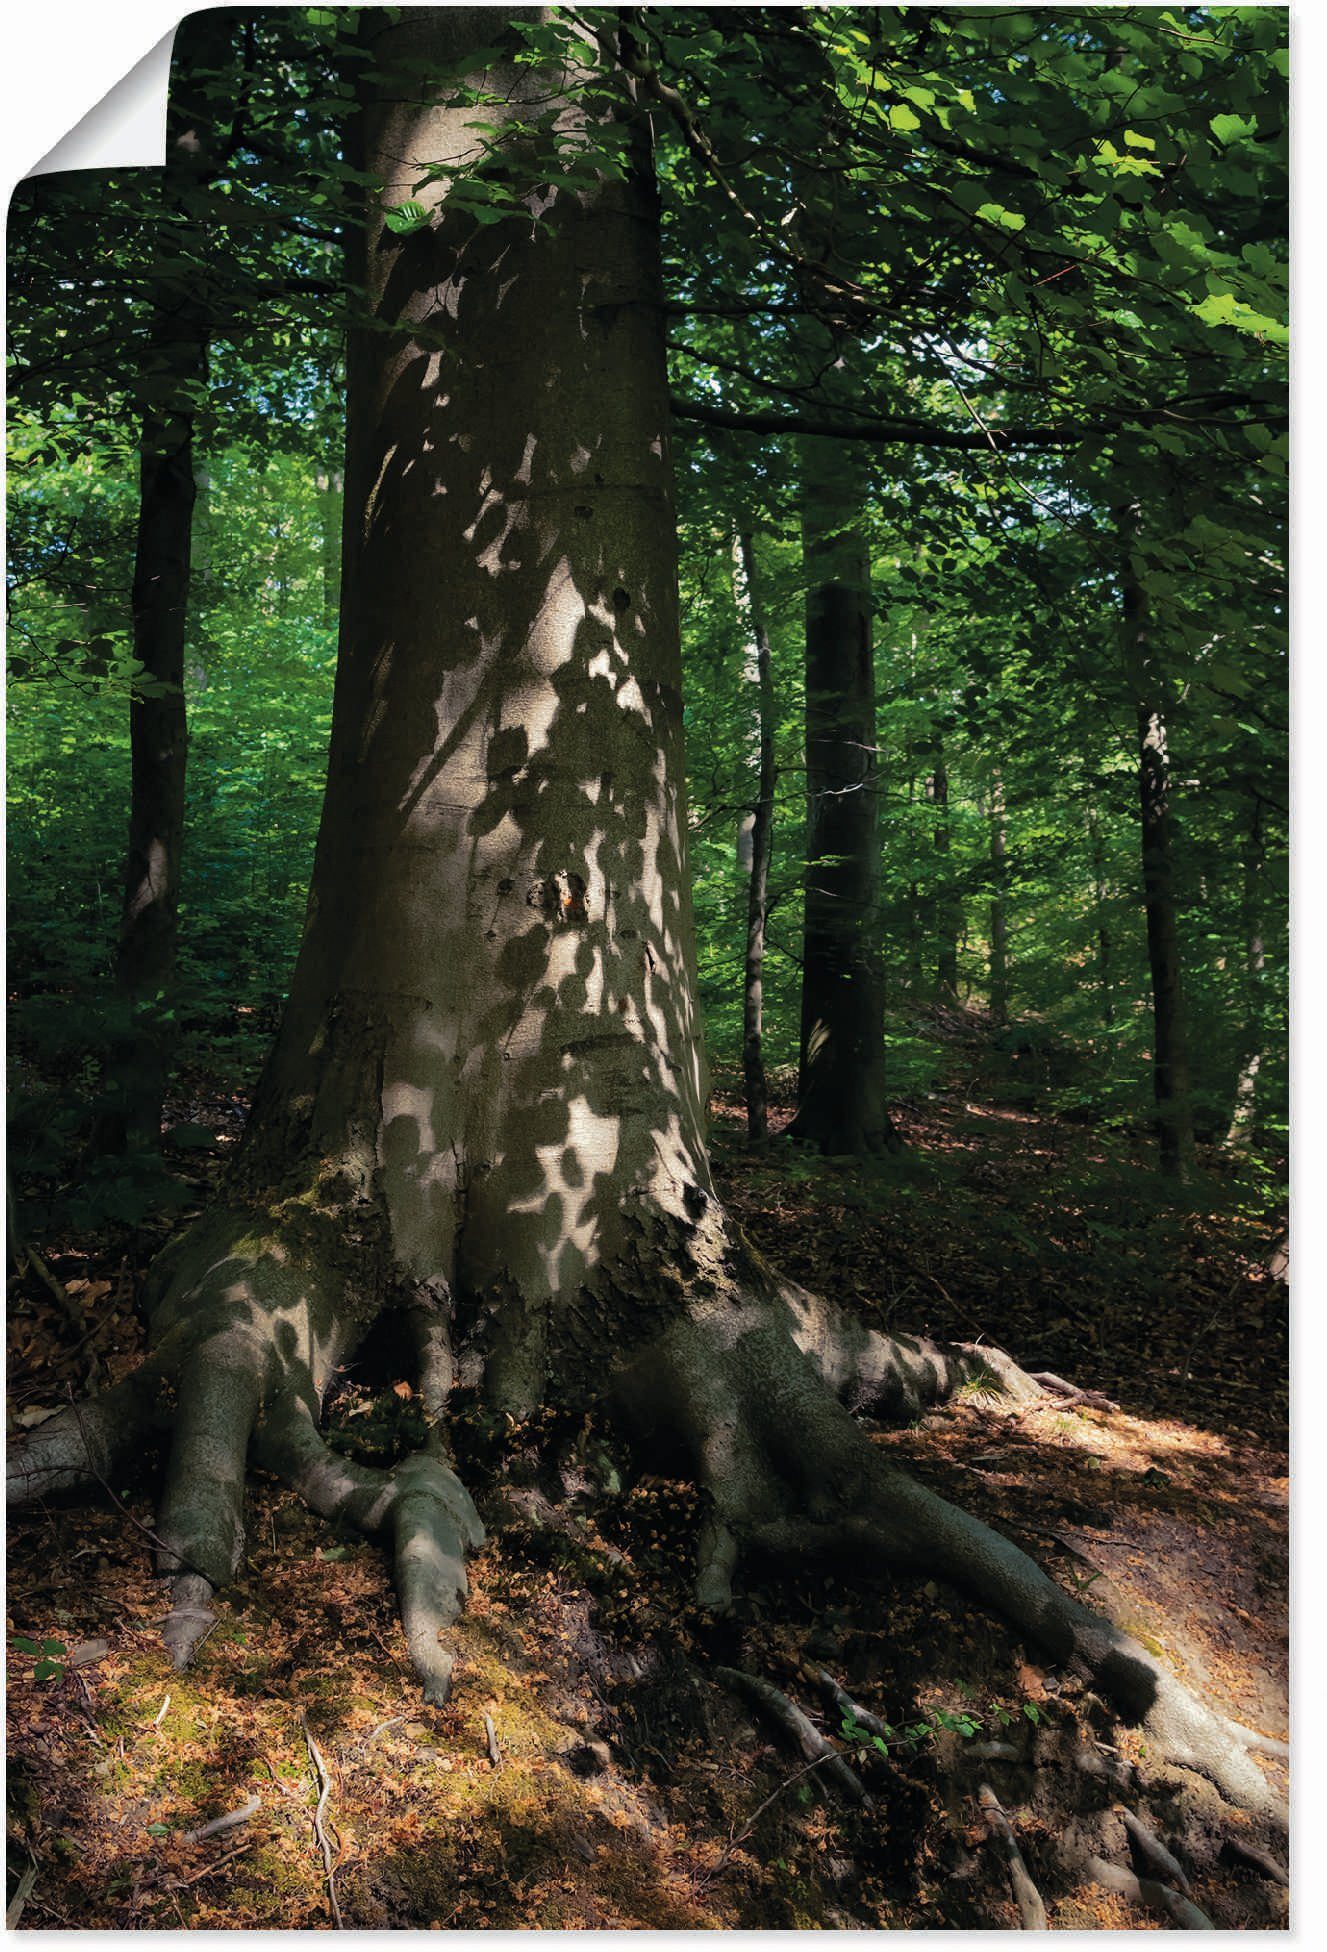 Artland Wandbild Waldimpression, Baumbilder (1 oder Poster in als Alubild, Leinwandbild, Größen Wandaufkleber St), versch